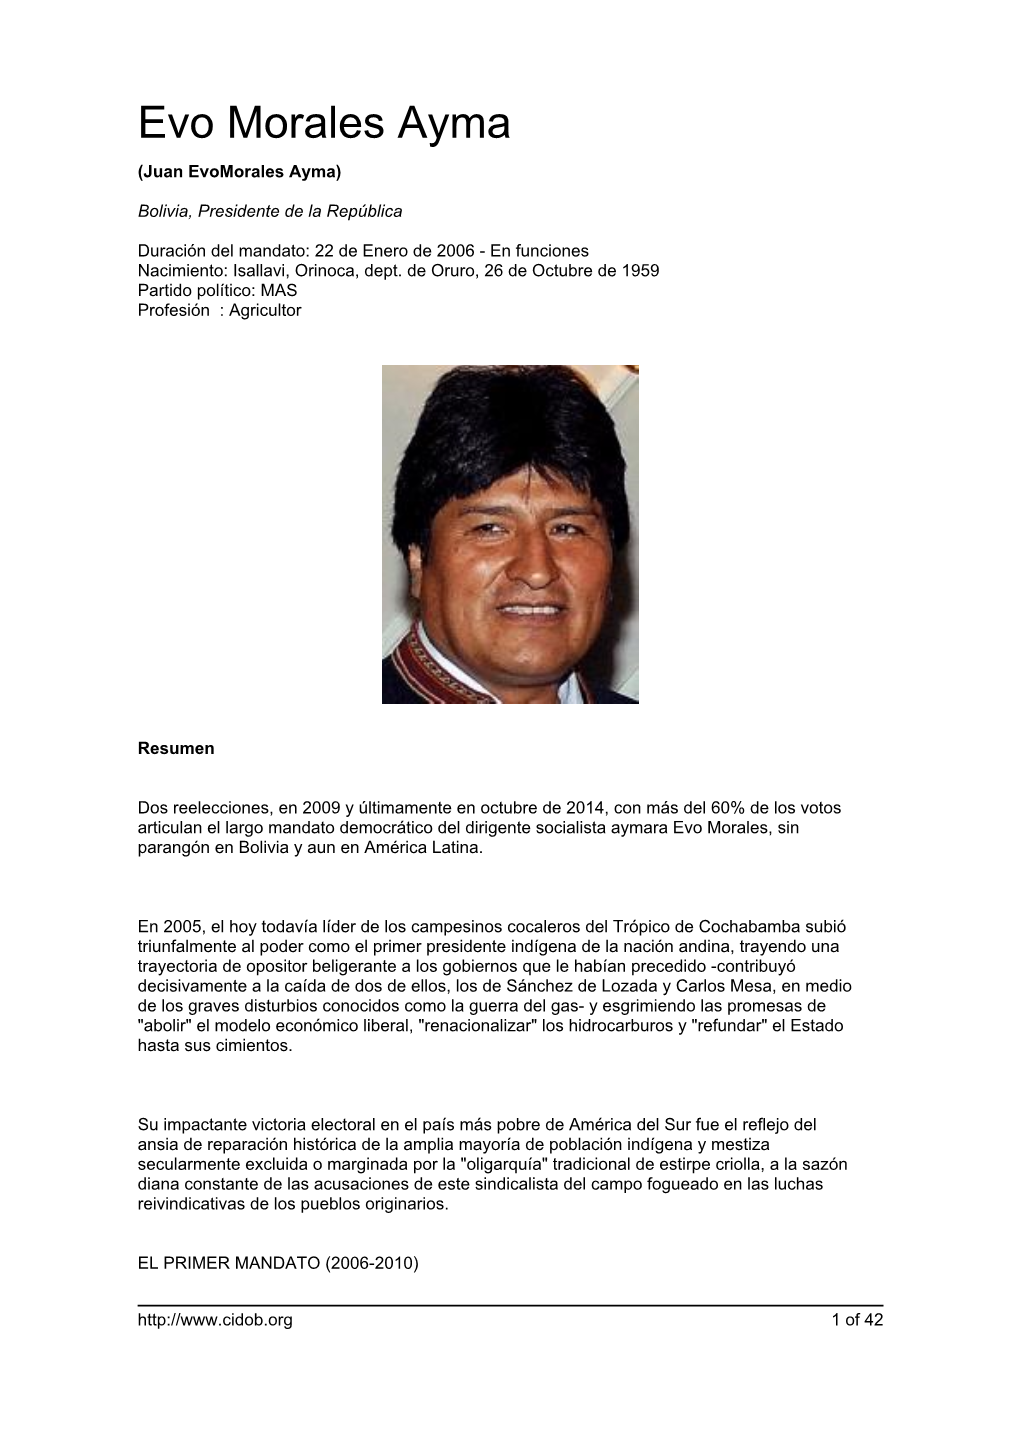 Evo Morales Ayma (Juan Evomorales Ayma)